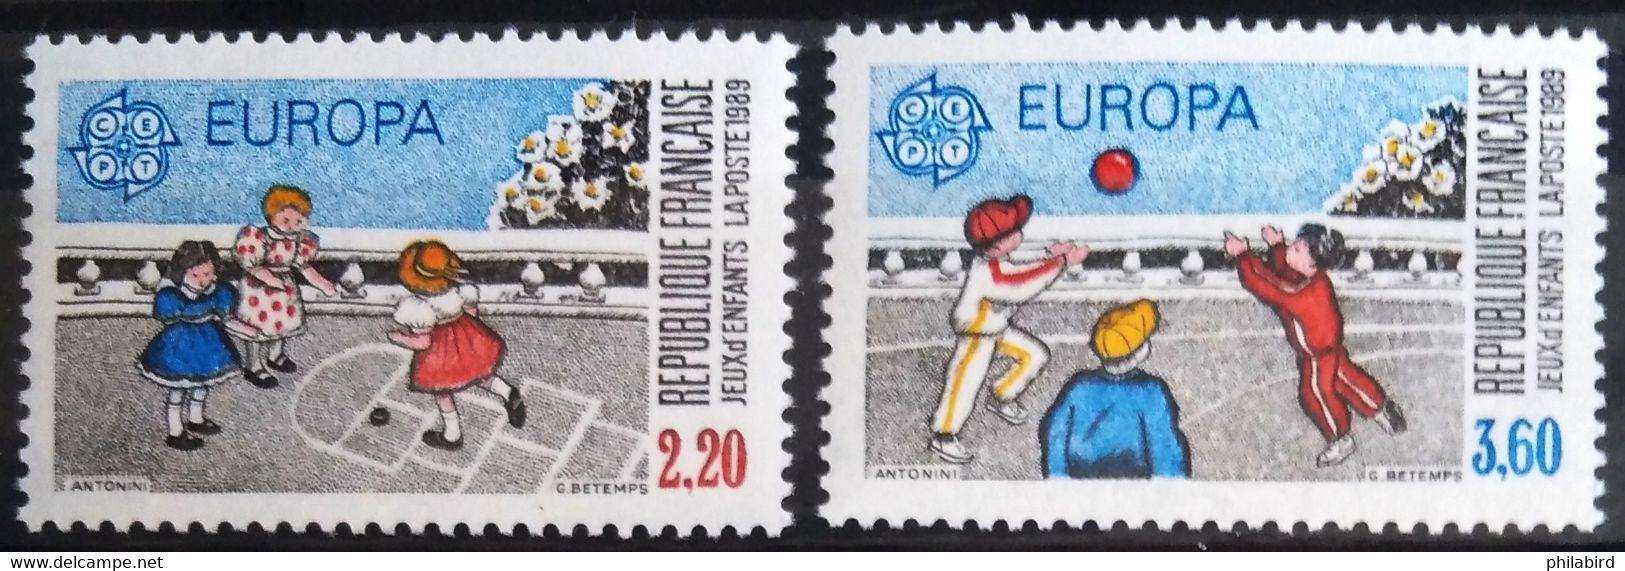 EUROPA 1989 - FRANCE                    N° 2584/2585                        NEUF** - 1989